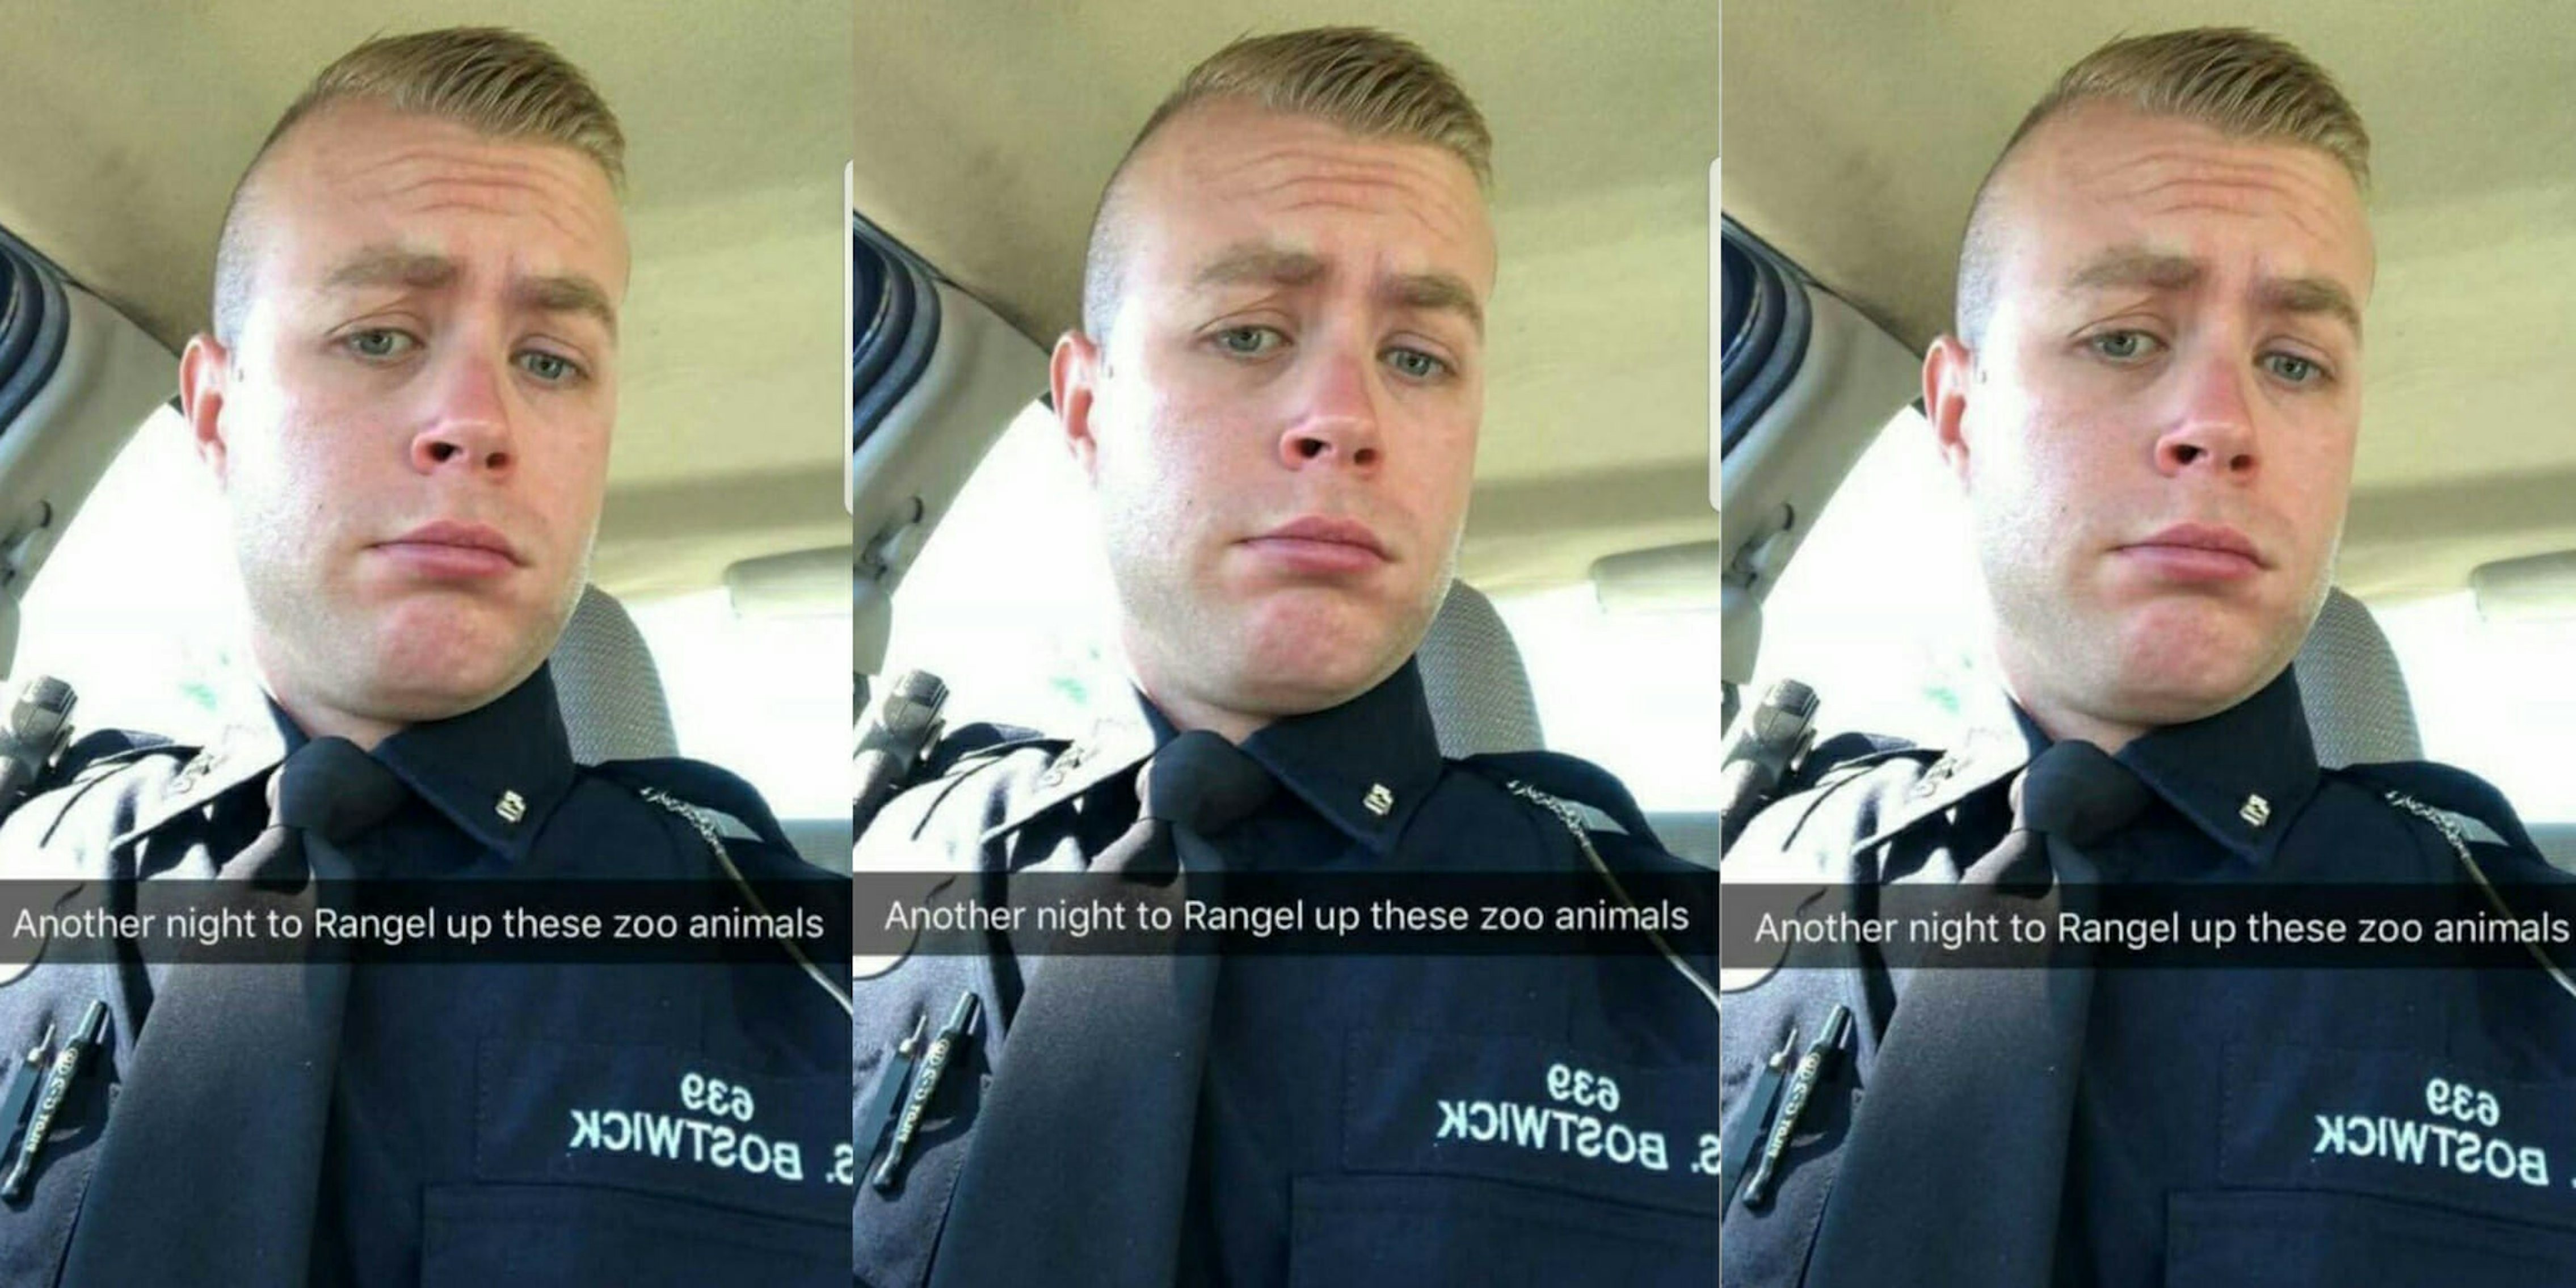 Detroit police officer fired for racist Snapchat selfie